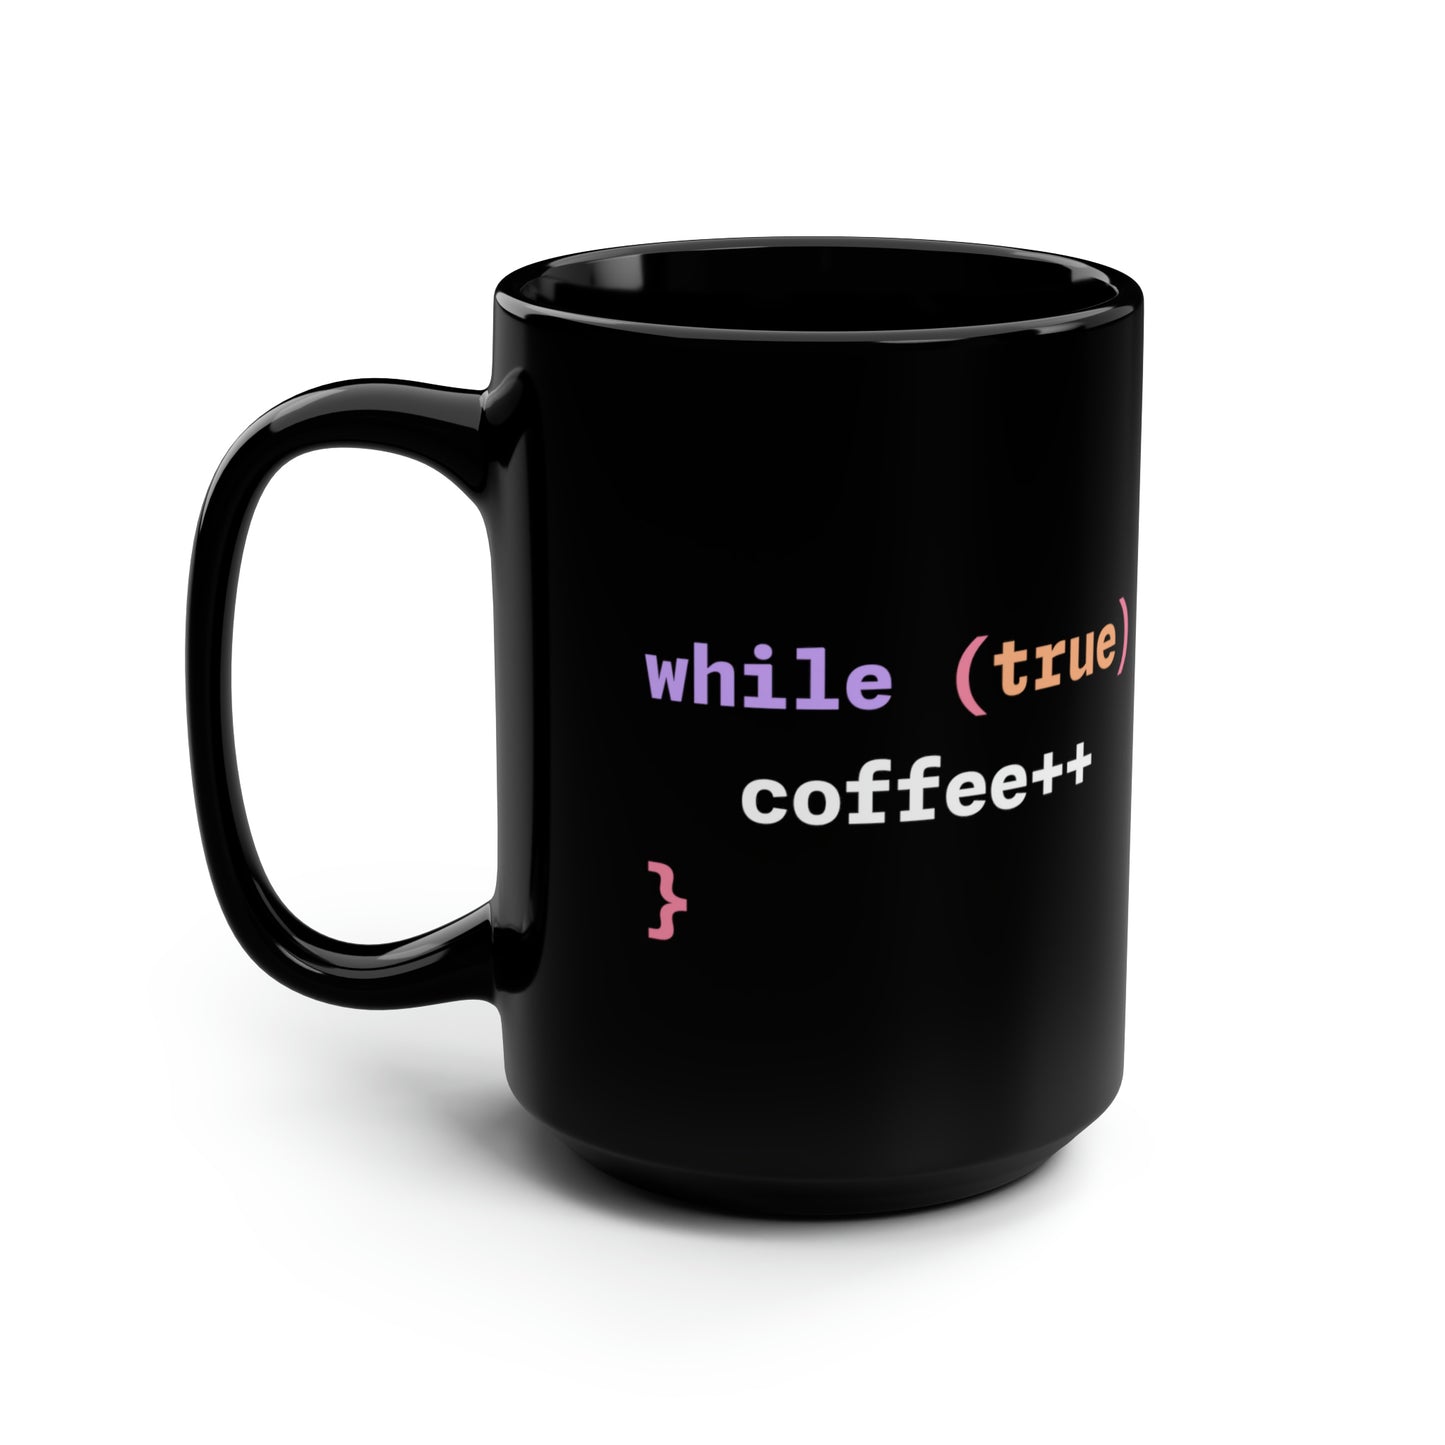 coffee++ mug: Black